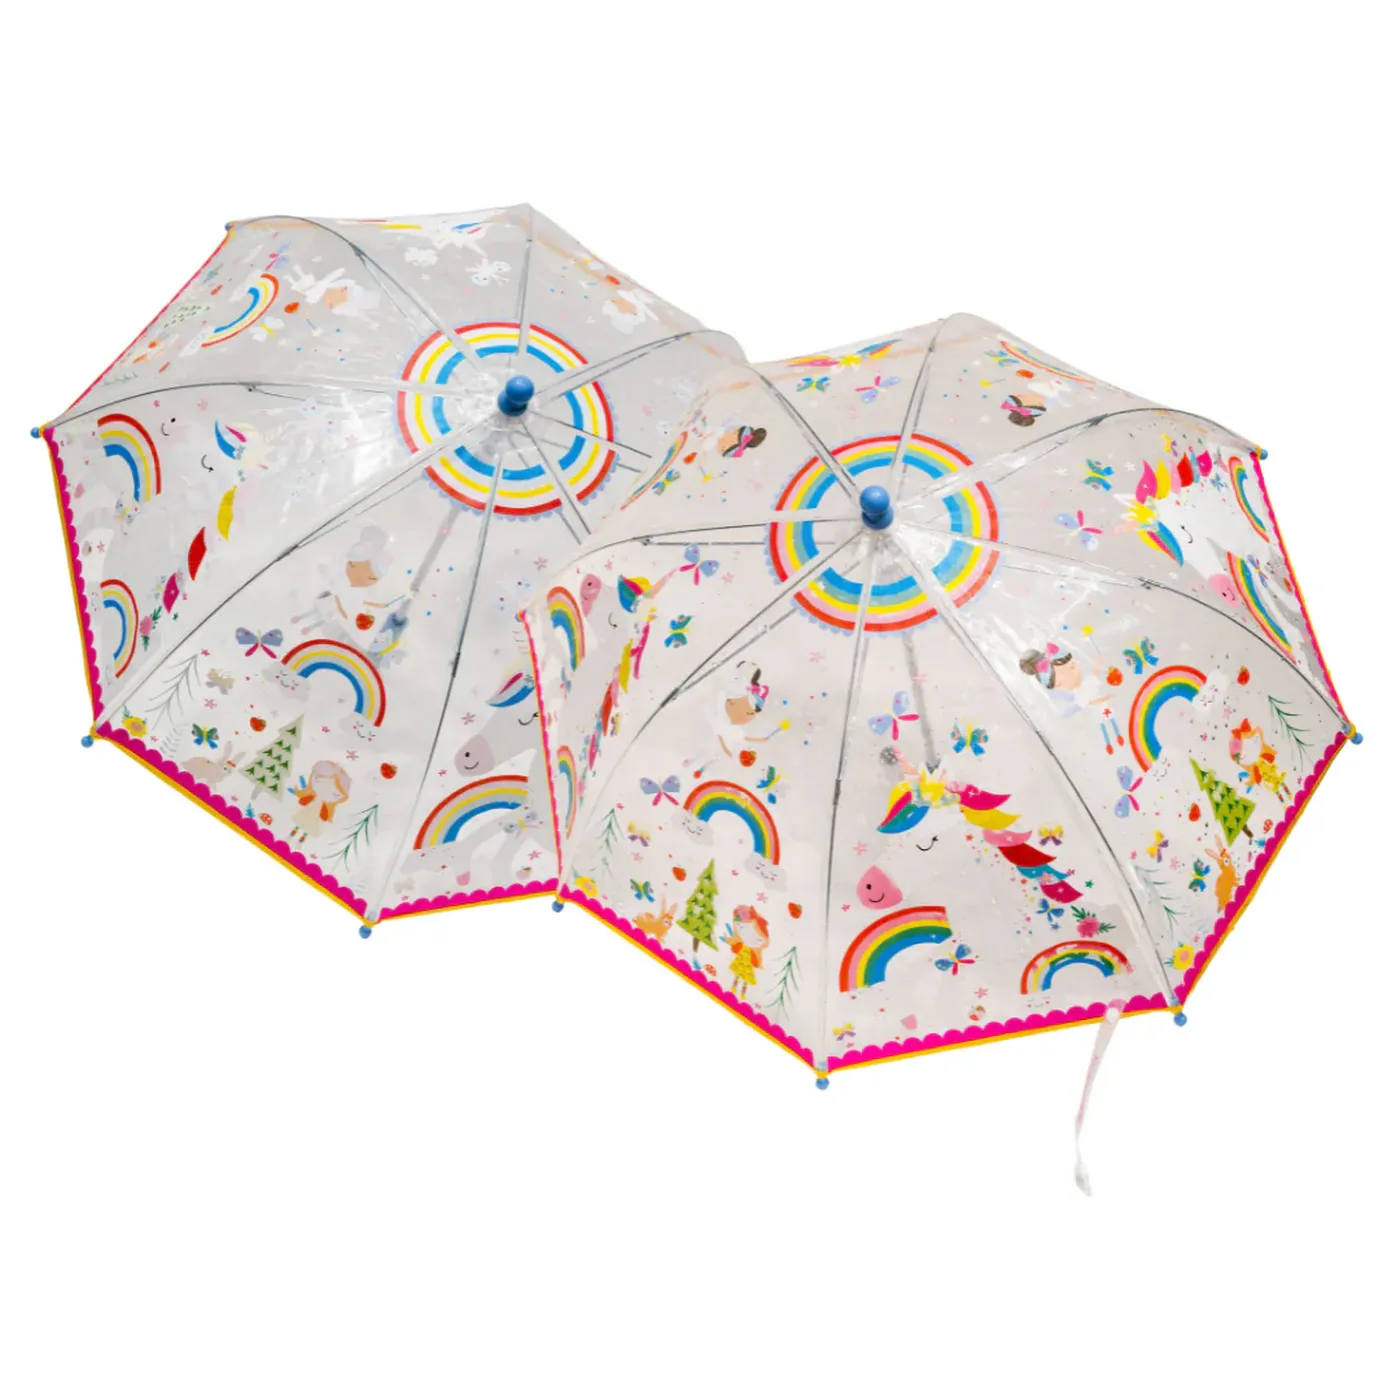 Umbrela transparenta pentru copii, in culori schimbatoare Rainbow Fairy, 3 ani+, Floss & Rock